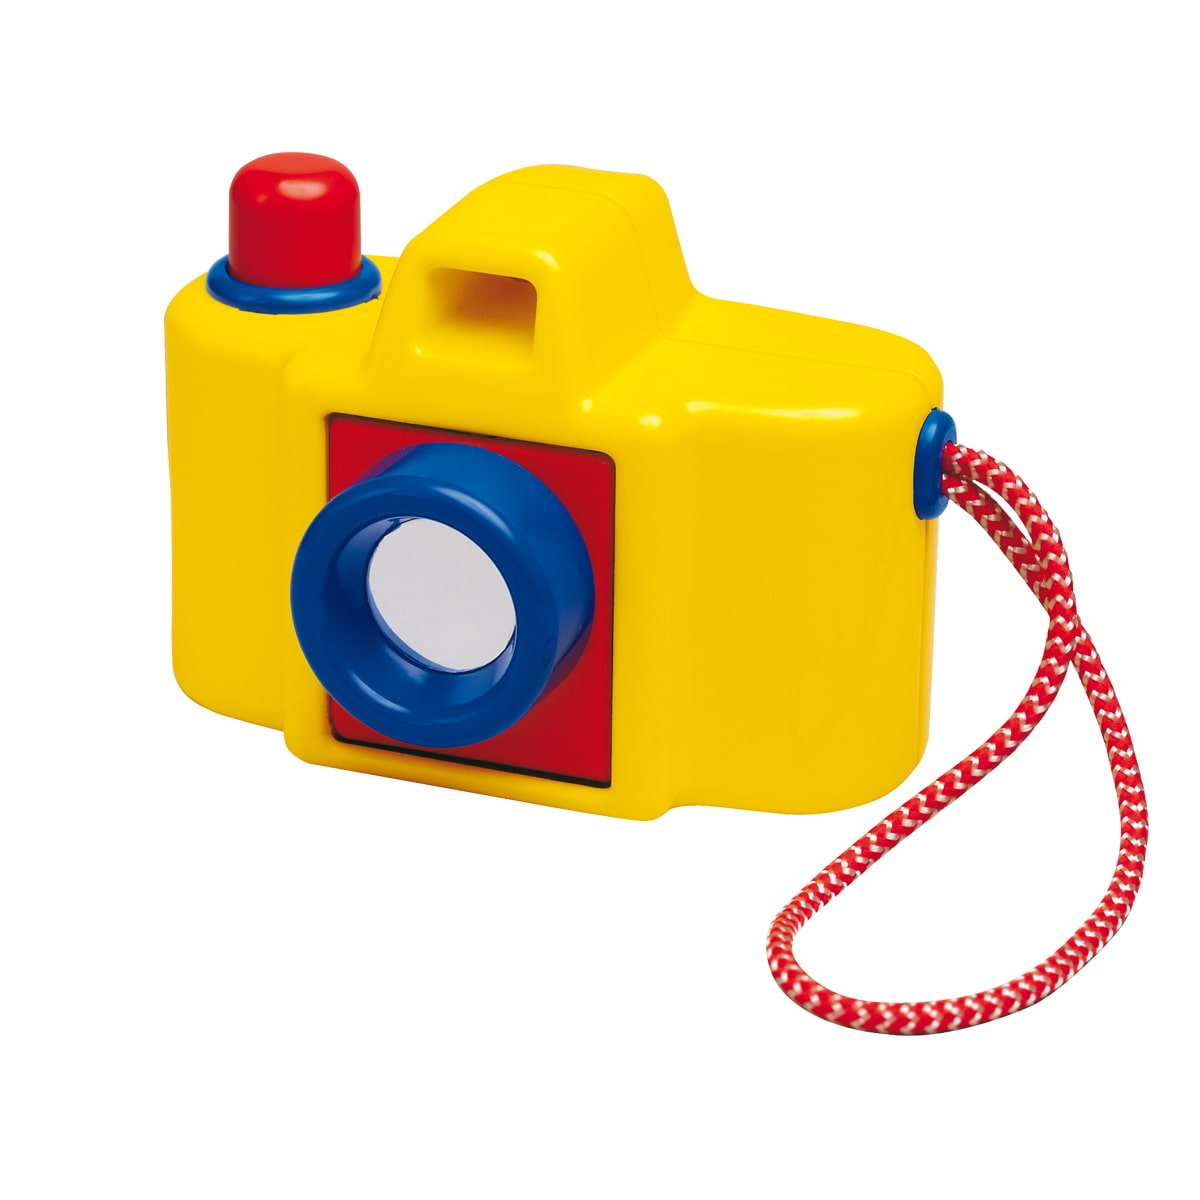 ベビーカメラ ボーネルンド オンラインショップ 世界中の知育玩具など あそび道具がたくさん 0歳からのお子様へのプレゼントにも